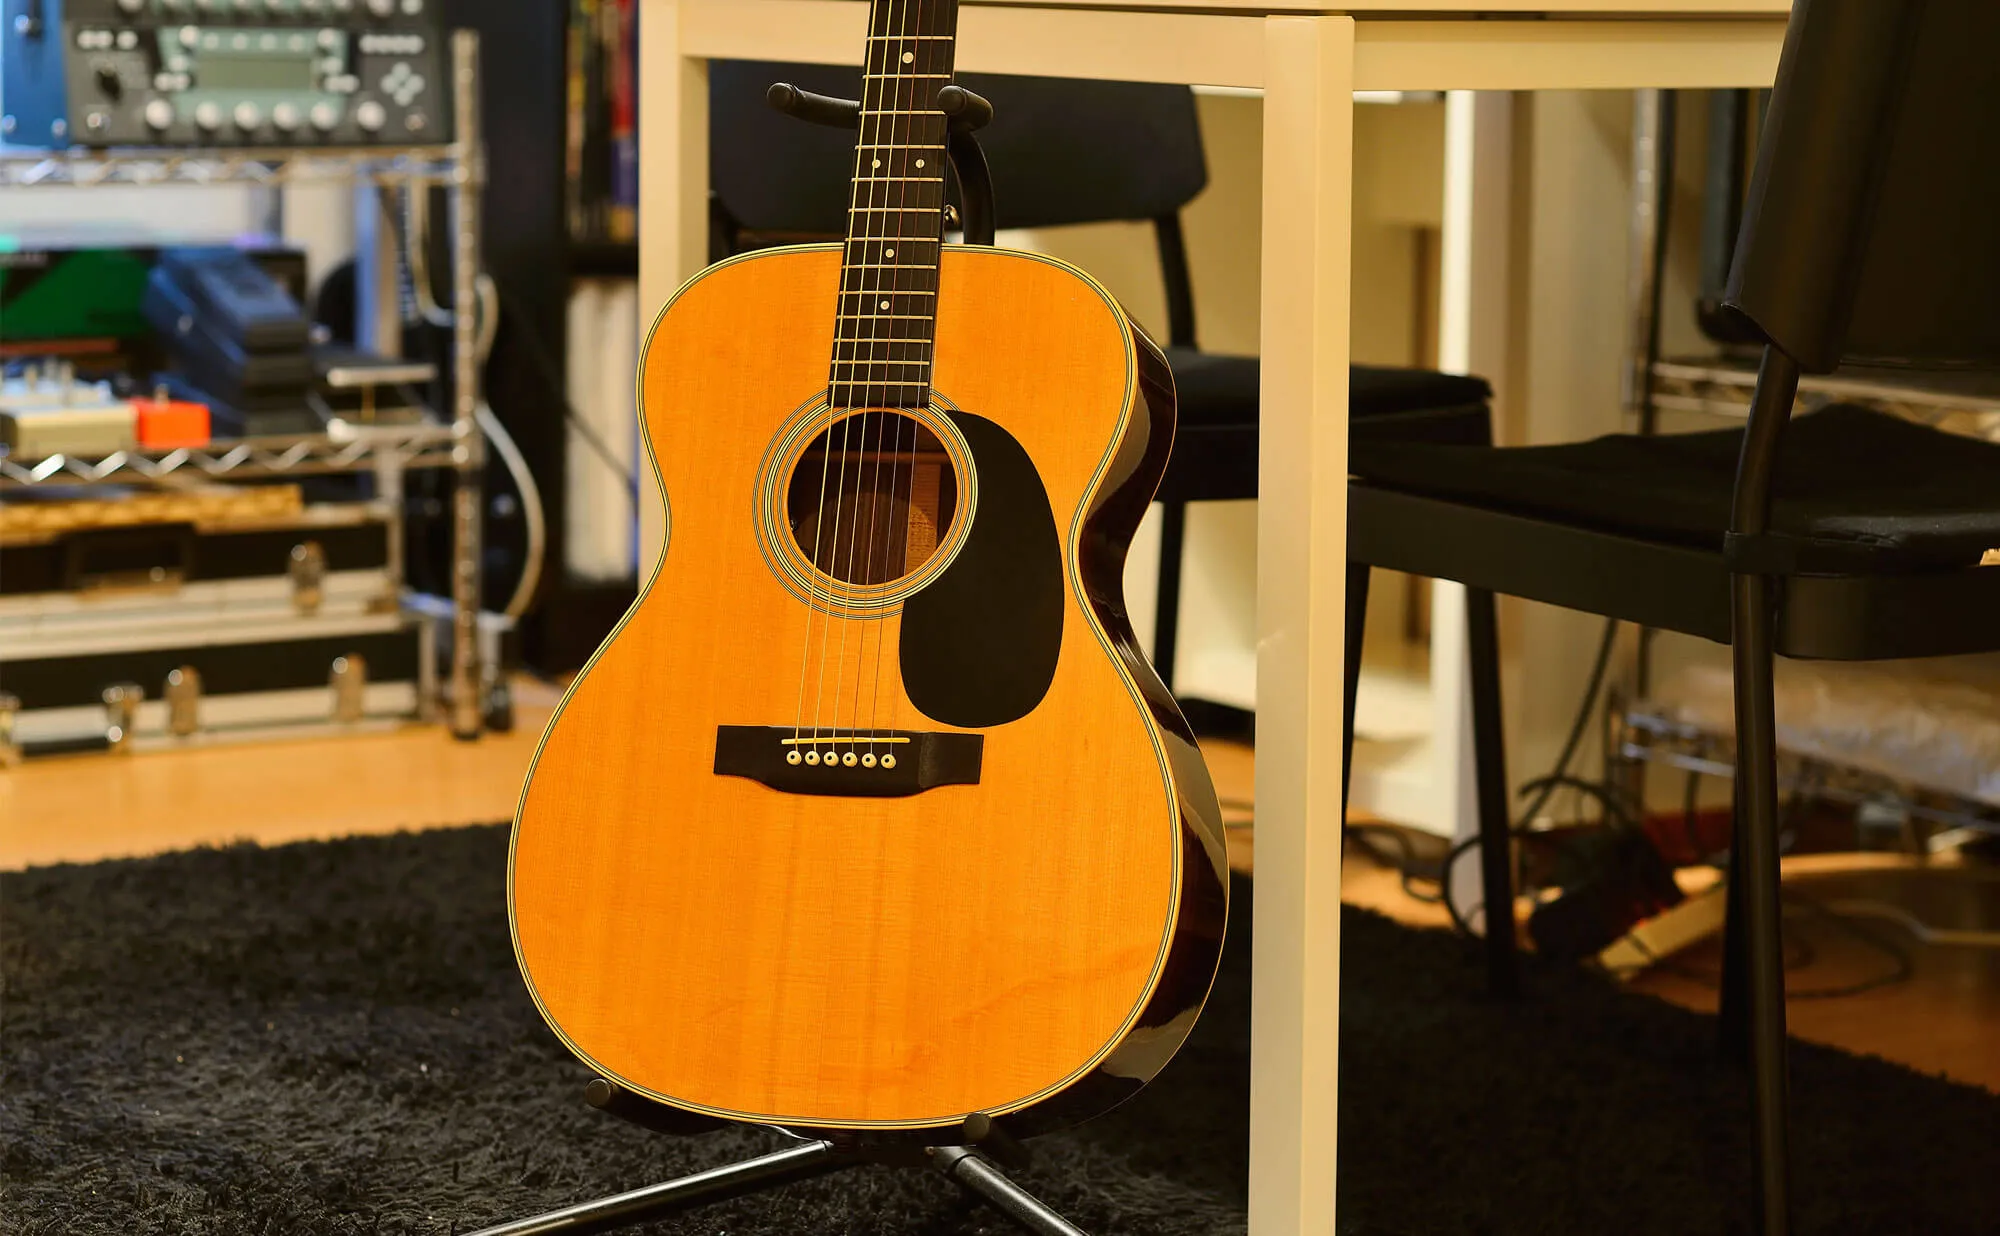 石神井公園ギター教室 | 60分完全個人レッスンのエルギタースクール